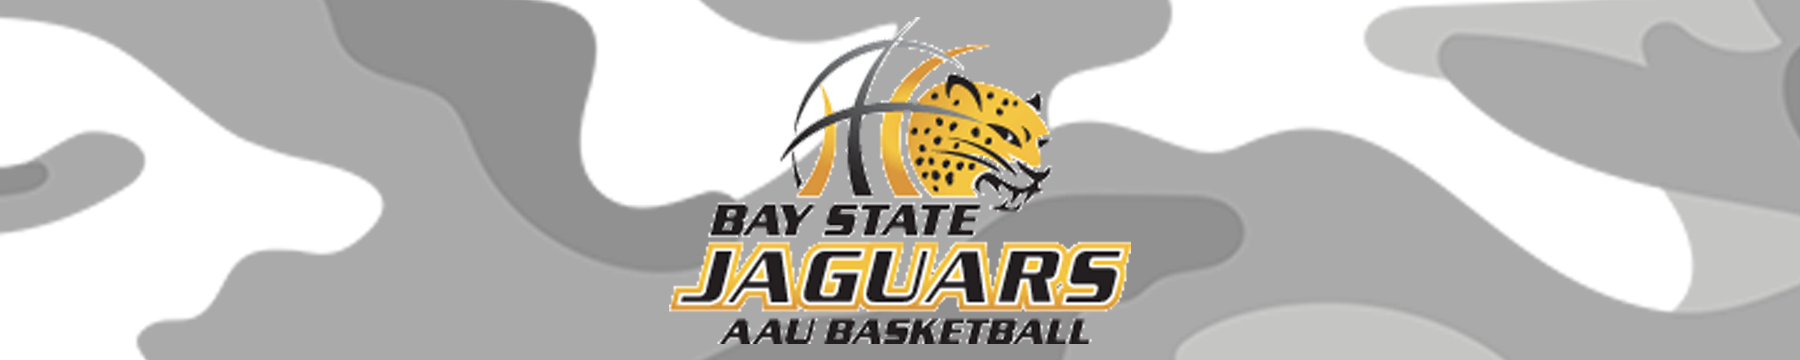 Bay State Jaguars '21